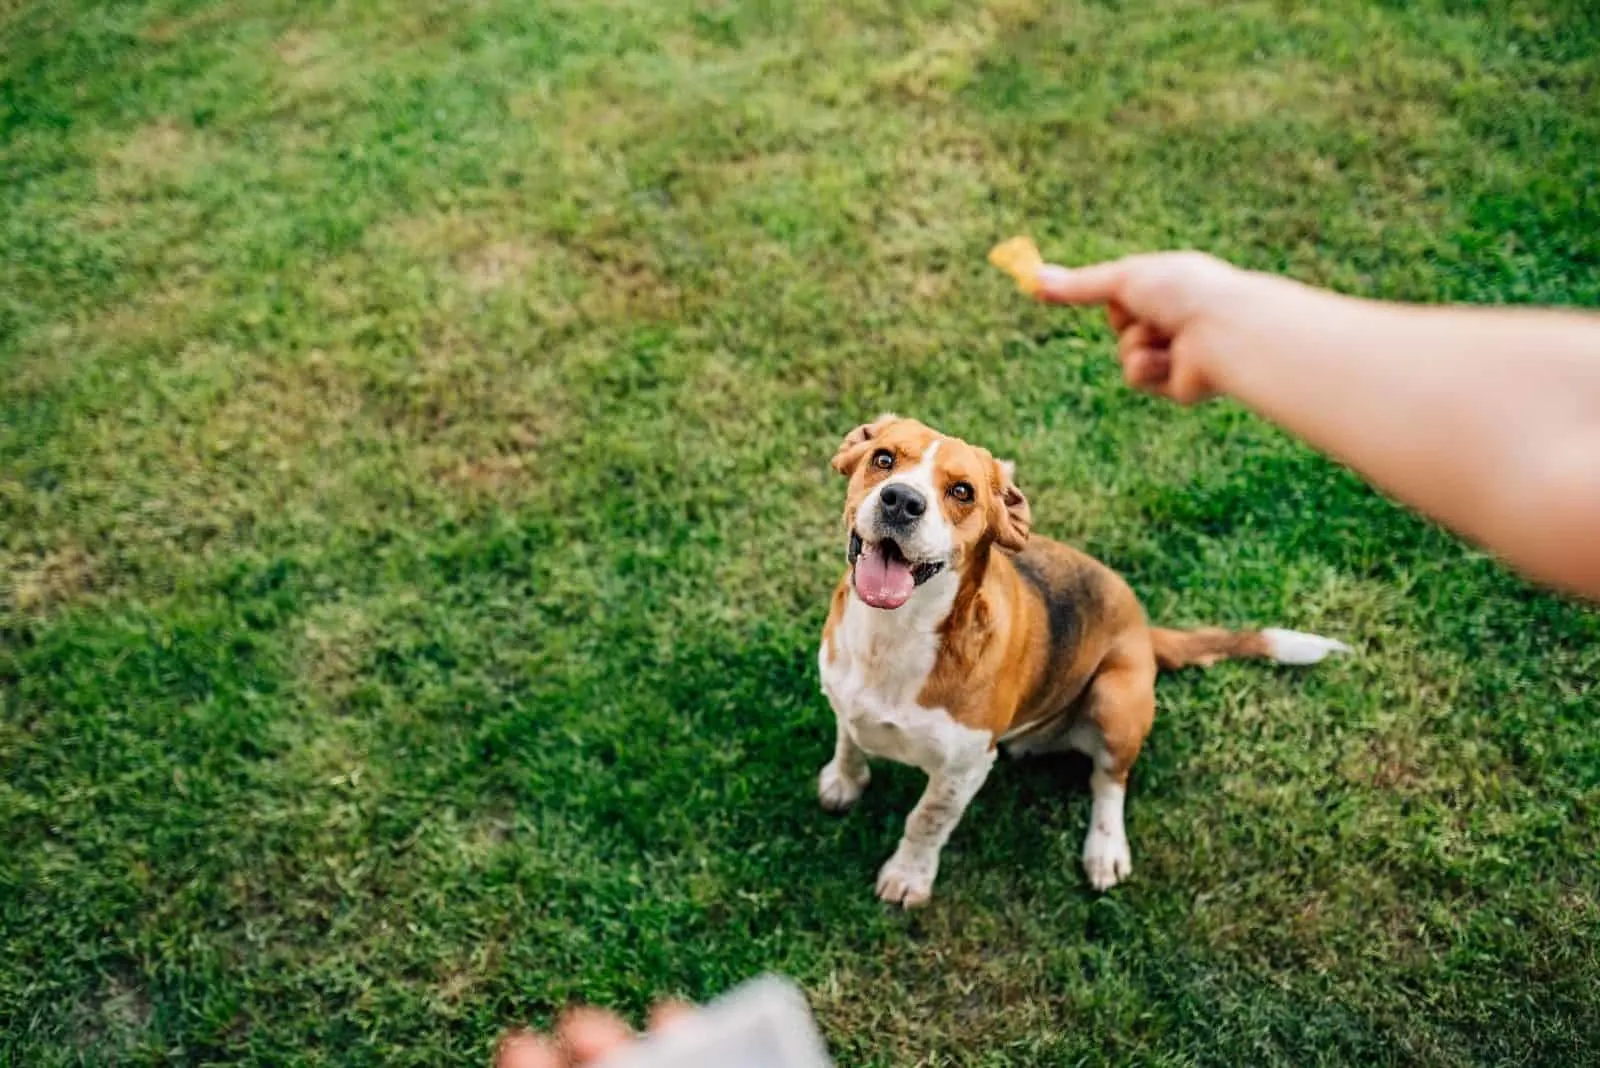 feeding happy dog with treats outdoors